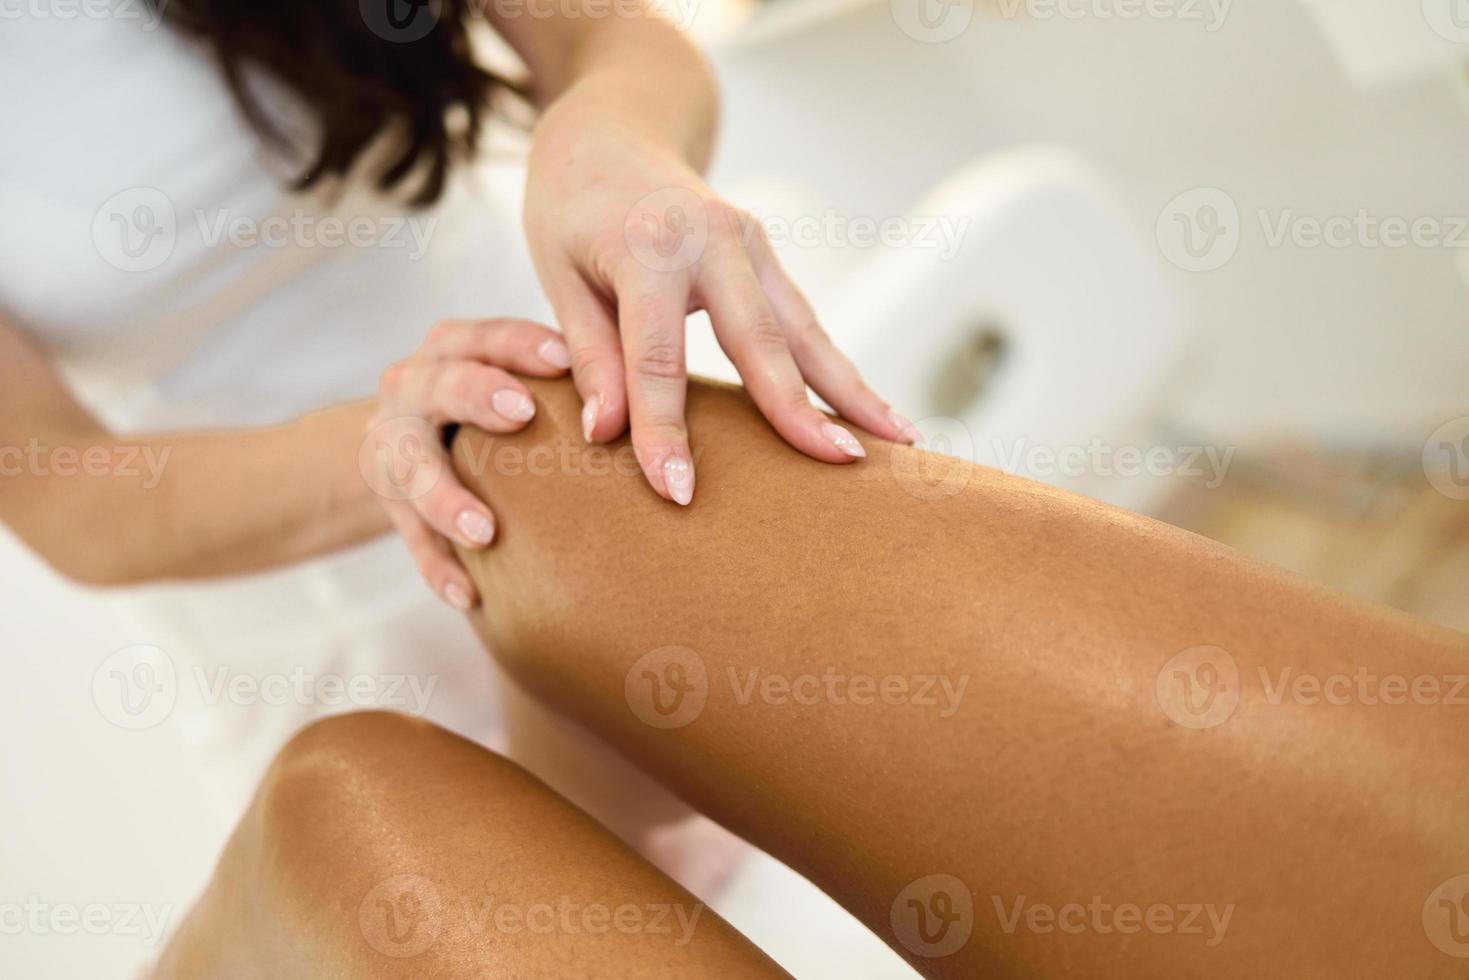 massagem de beleza na perna em um salão de beleza. foto